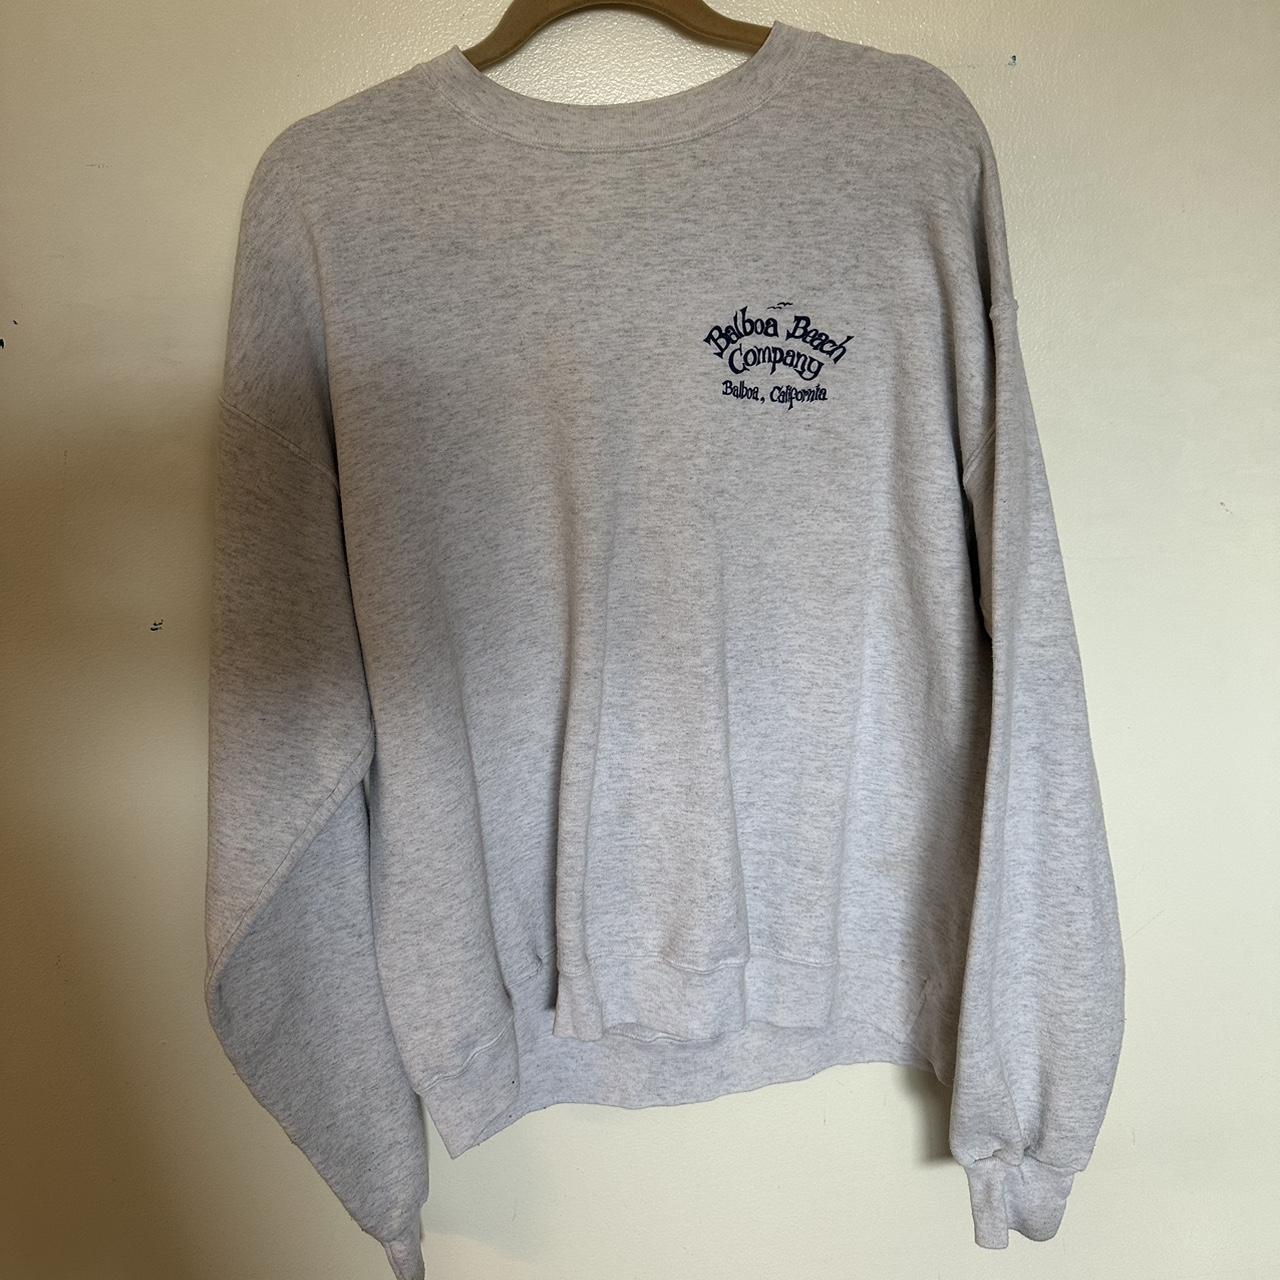 Hanes Women's Navy and Grey Sweatshirt | Depop